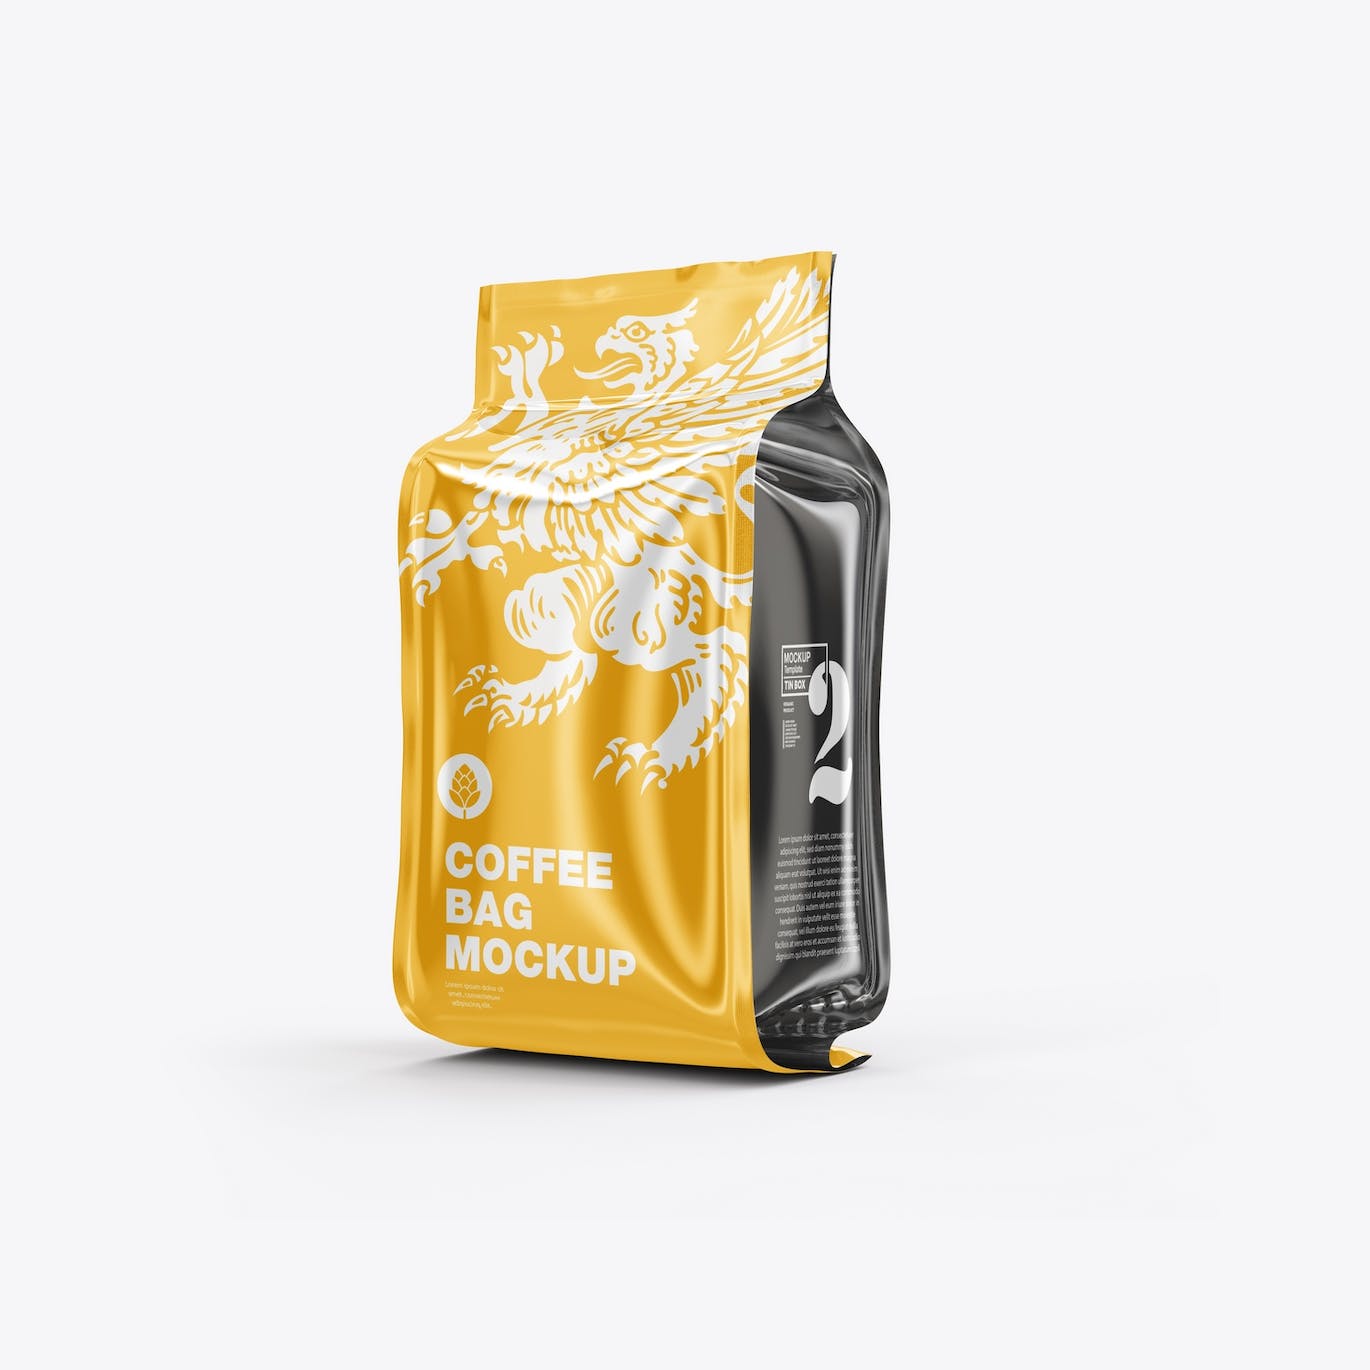 光滑的塑料纸咖啡袋包装设计样机图 Set Glossy Plastic Paper Coffee Bag Mockup 样机素材 第6张